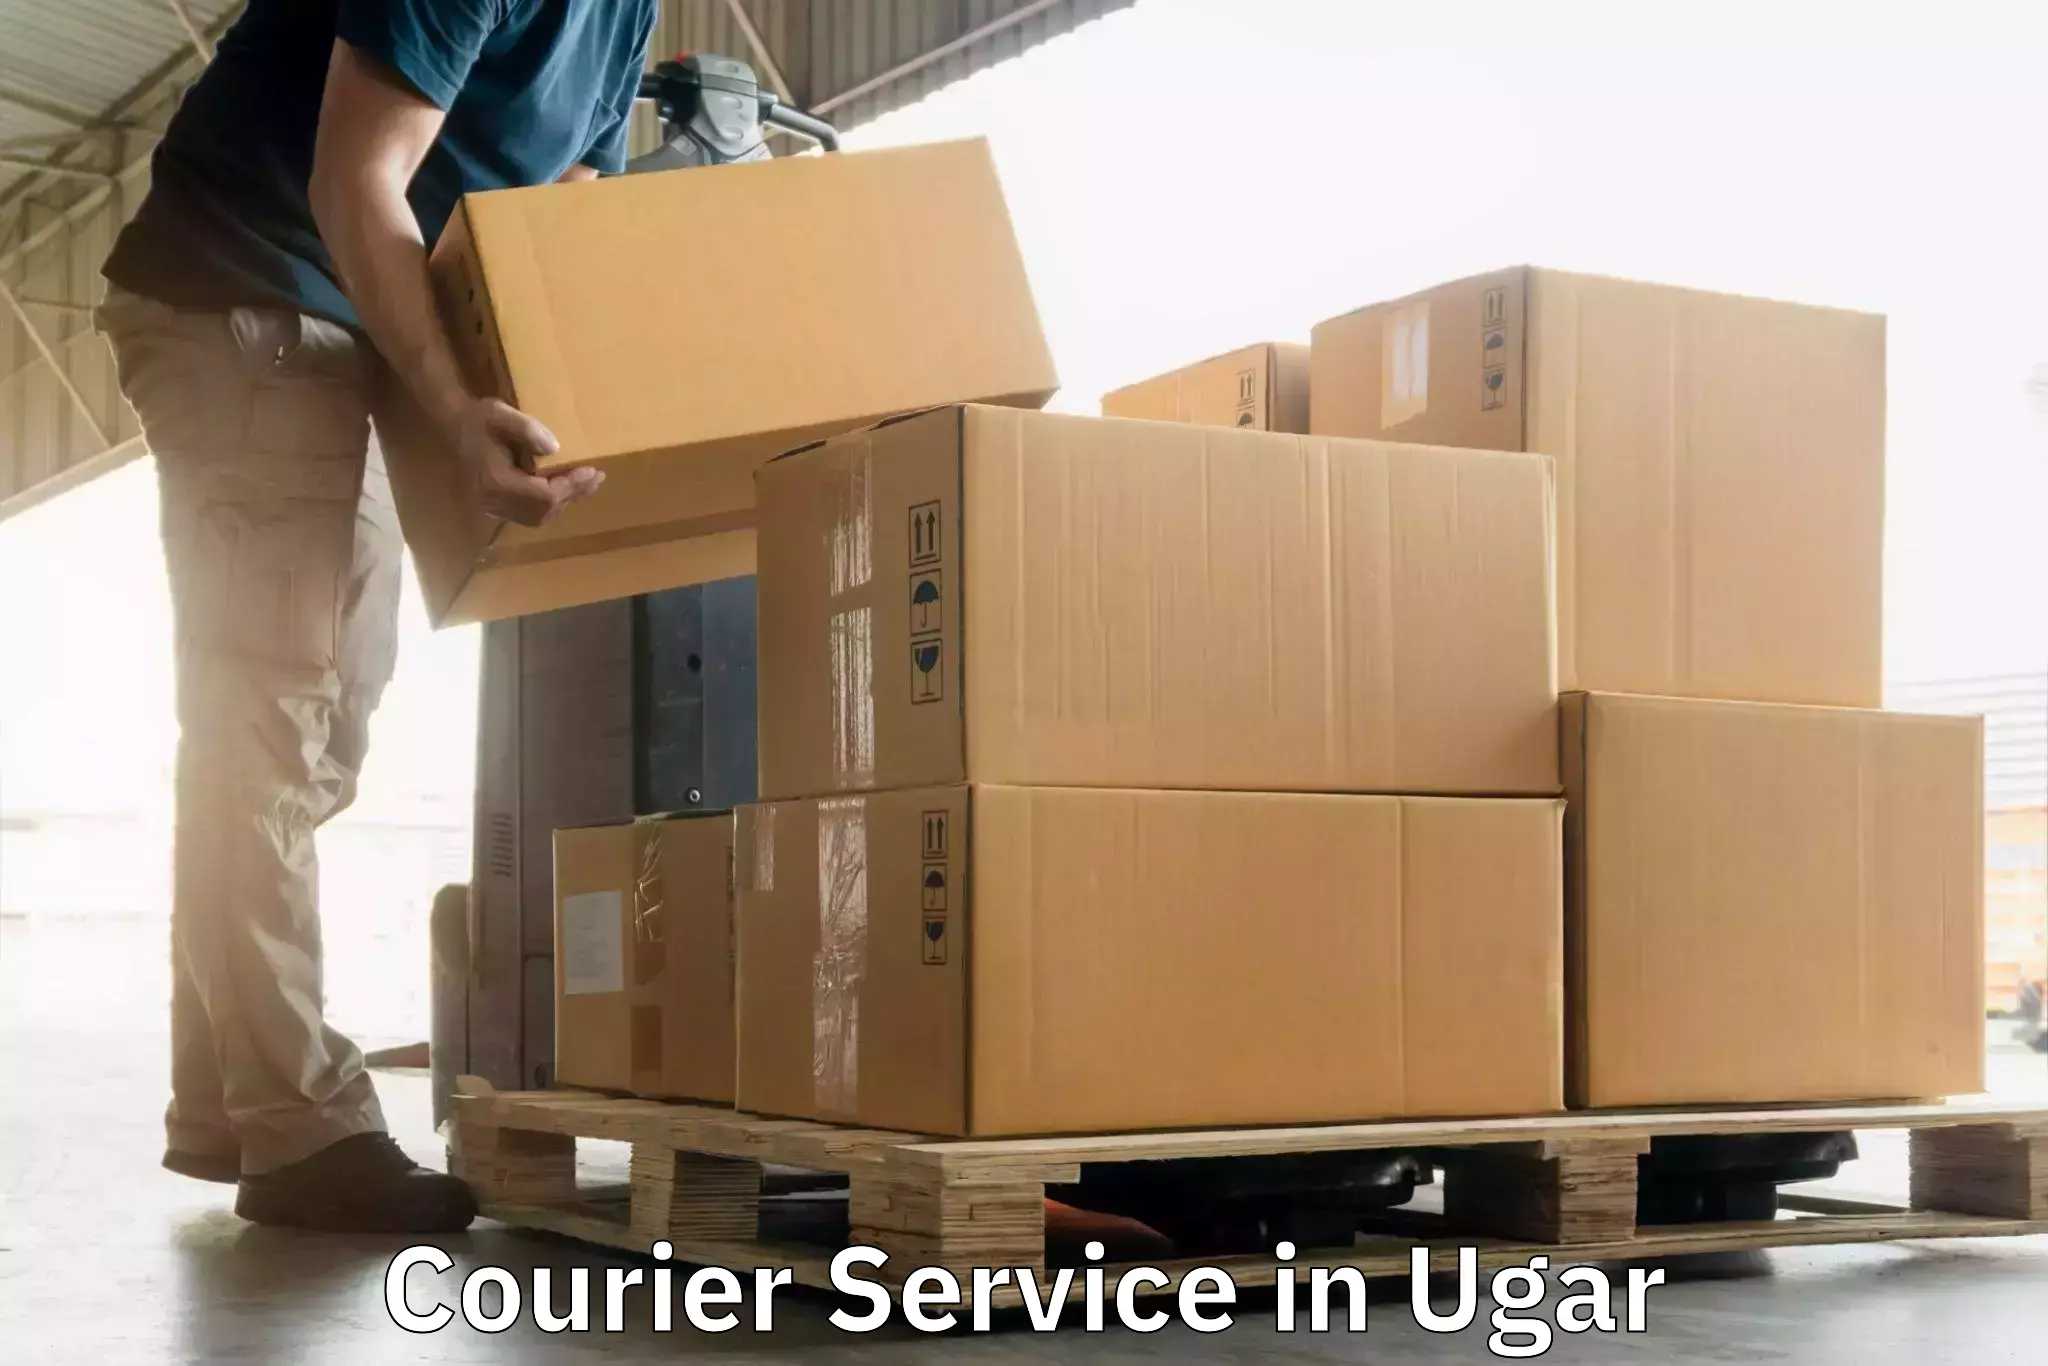 Efficient parcel delivery in Ugar